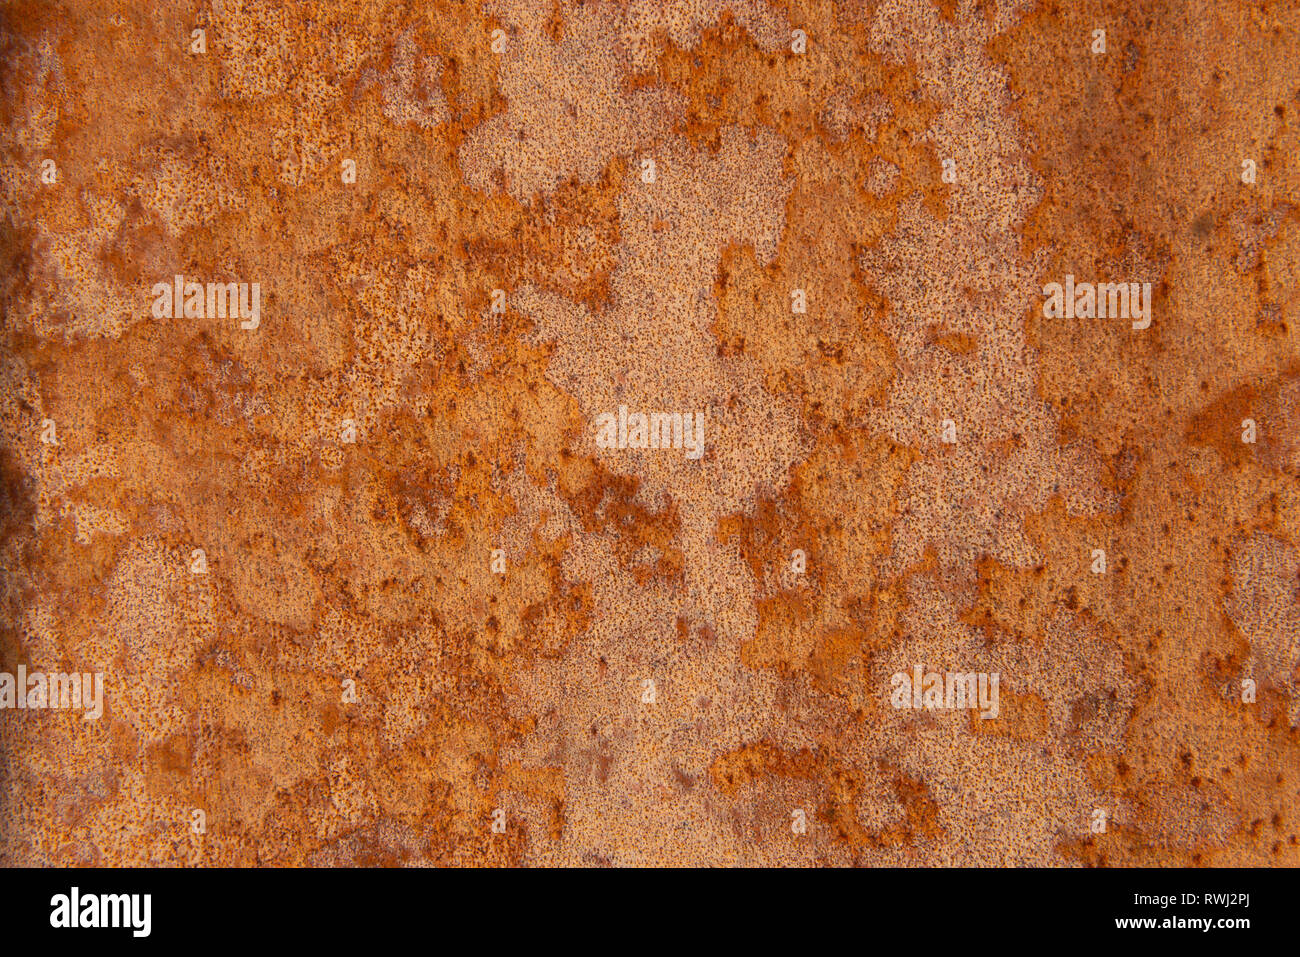 Alte Distressed Brown Terracotta Kupfer Rusty Stein mit groben Textur bunte Einschlüsse. Gebeizt Gradient Grob körnige Oberfläche Stockfoto